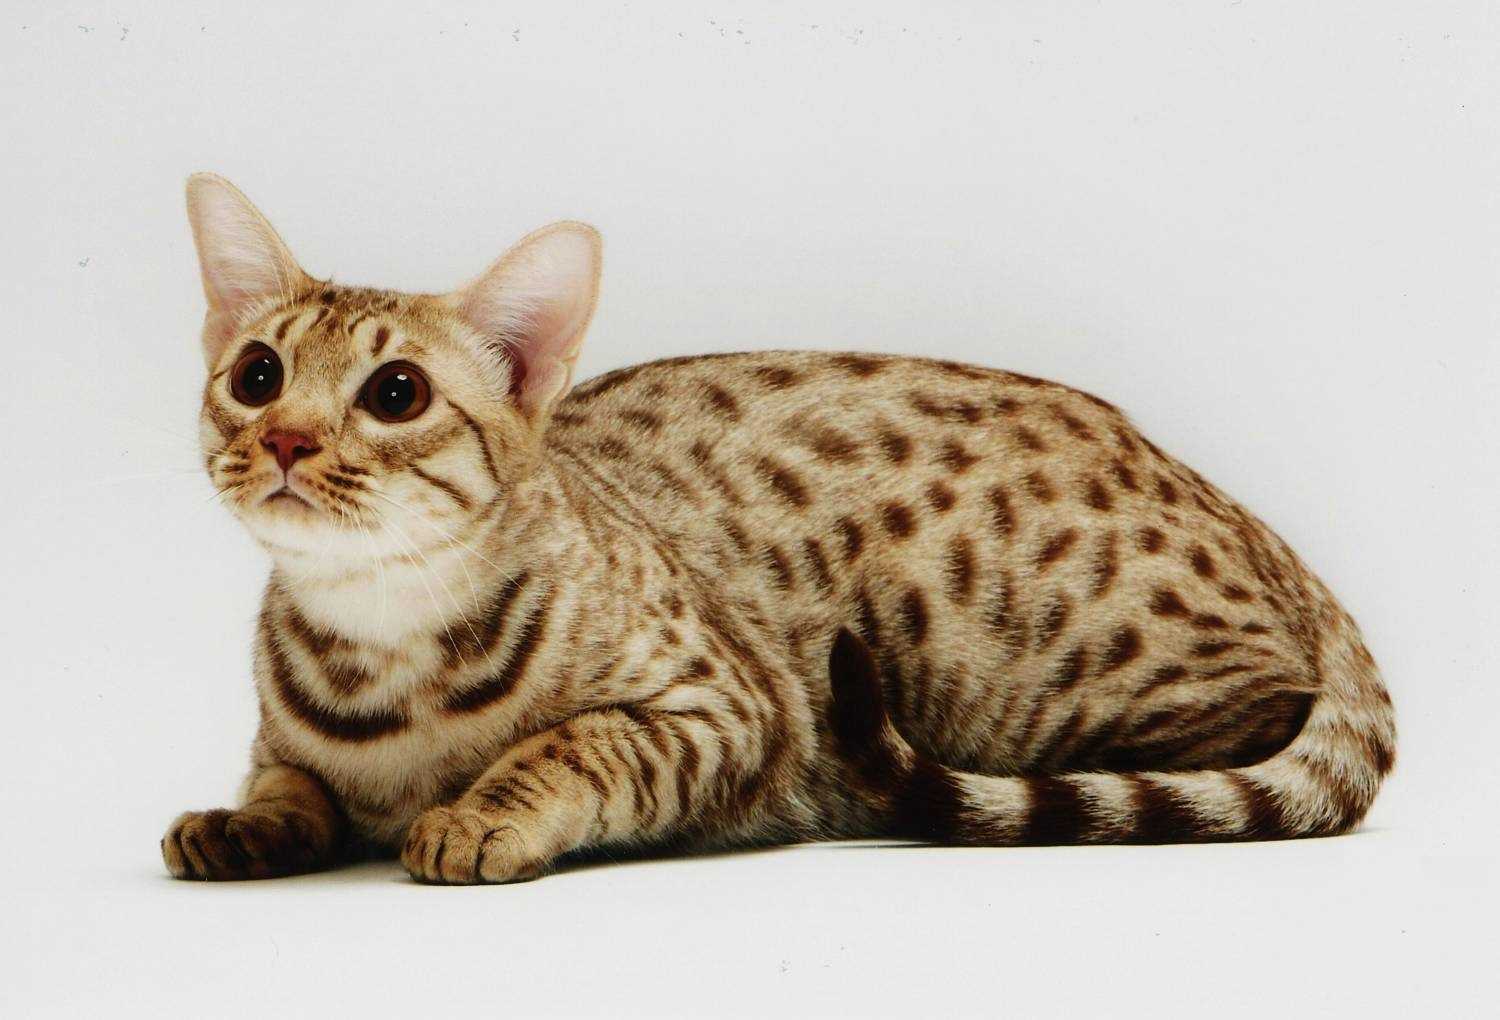 Породы кошек с фотографиями и названиями
породы кошек с фотографиями и названиями